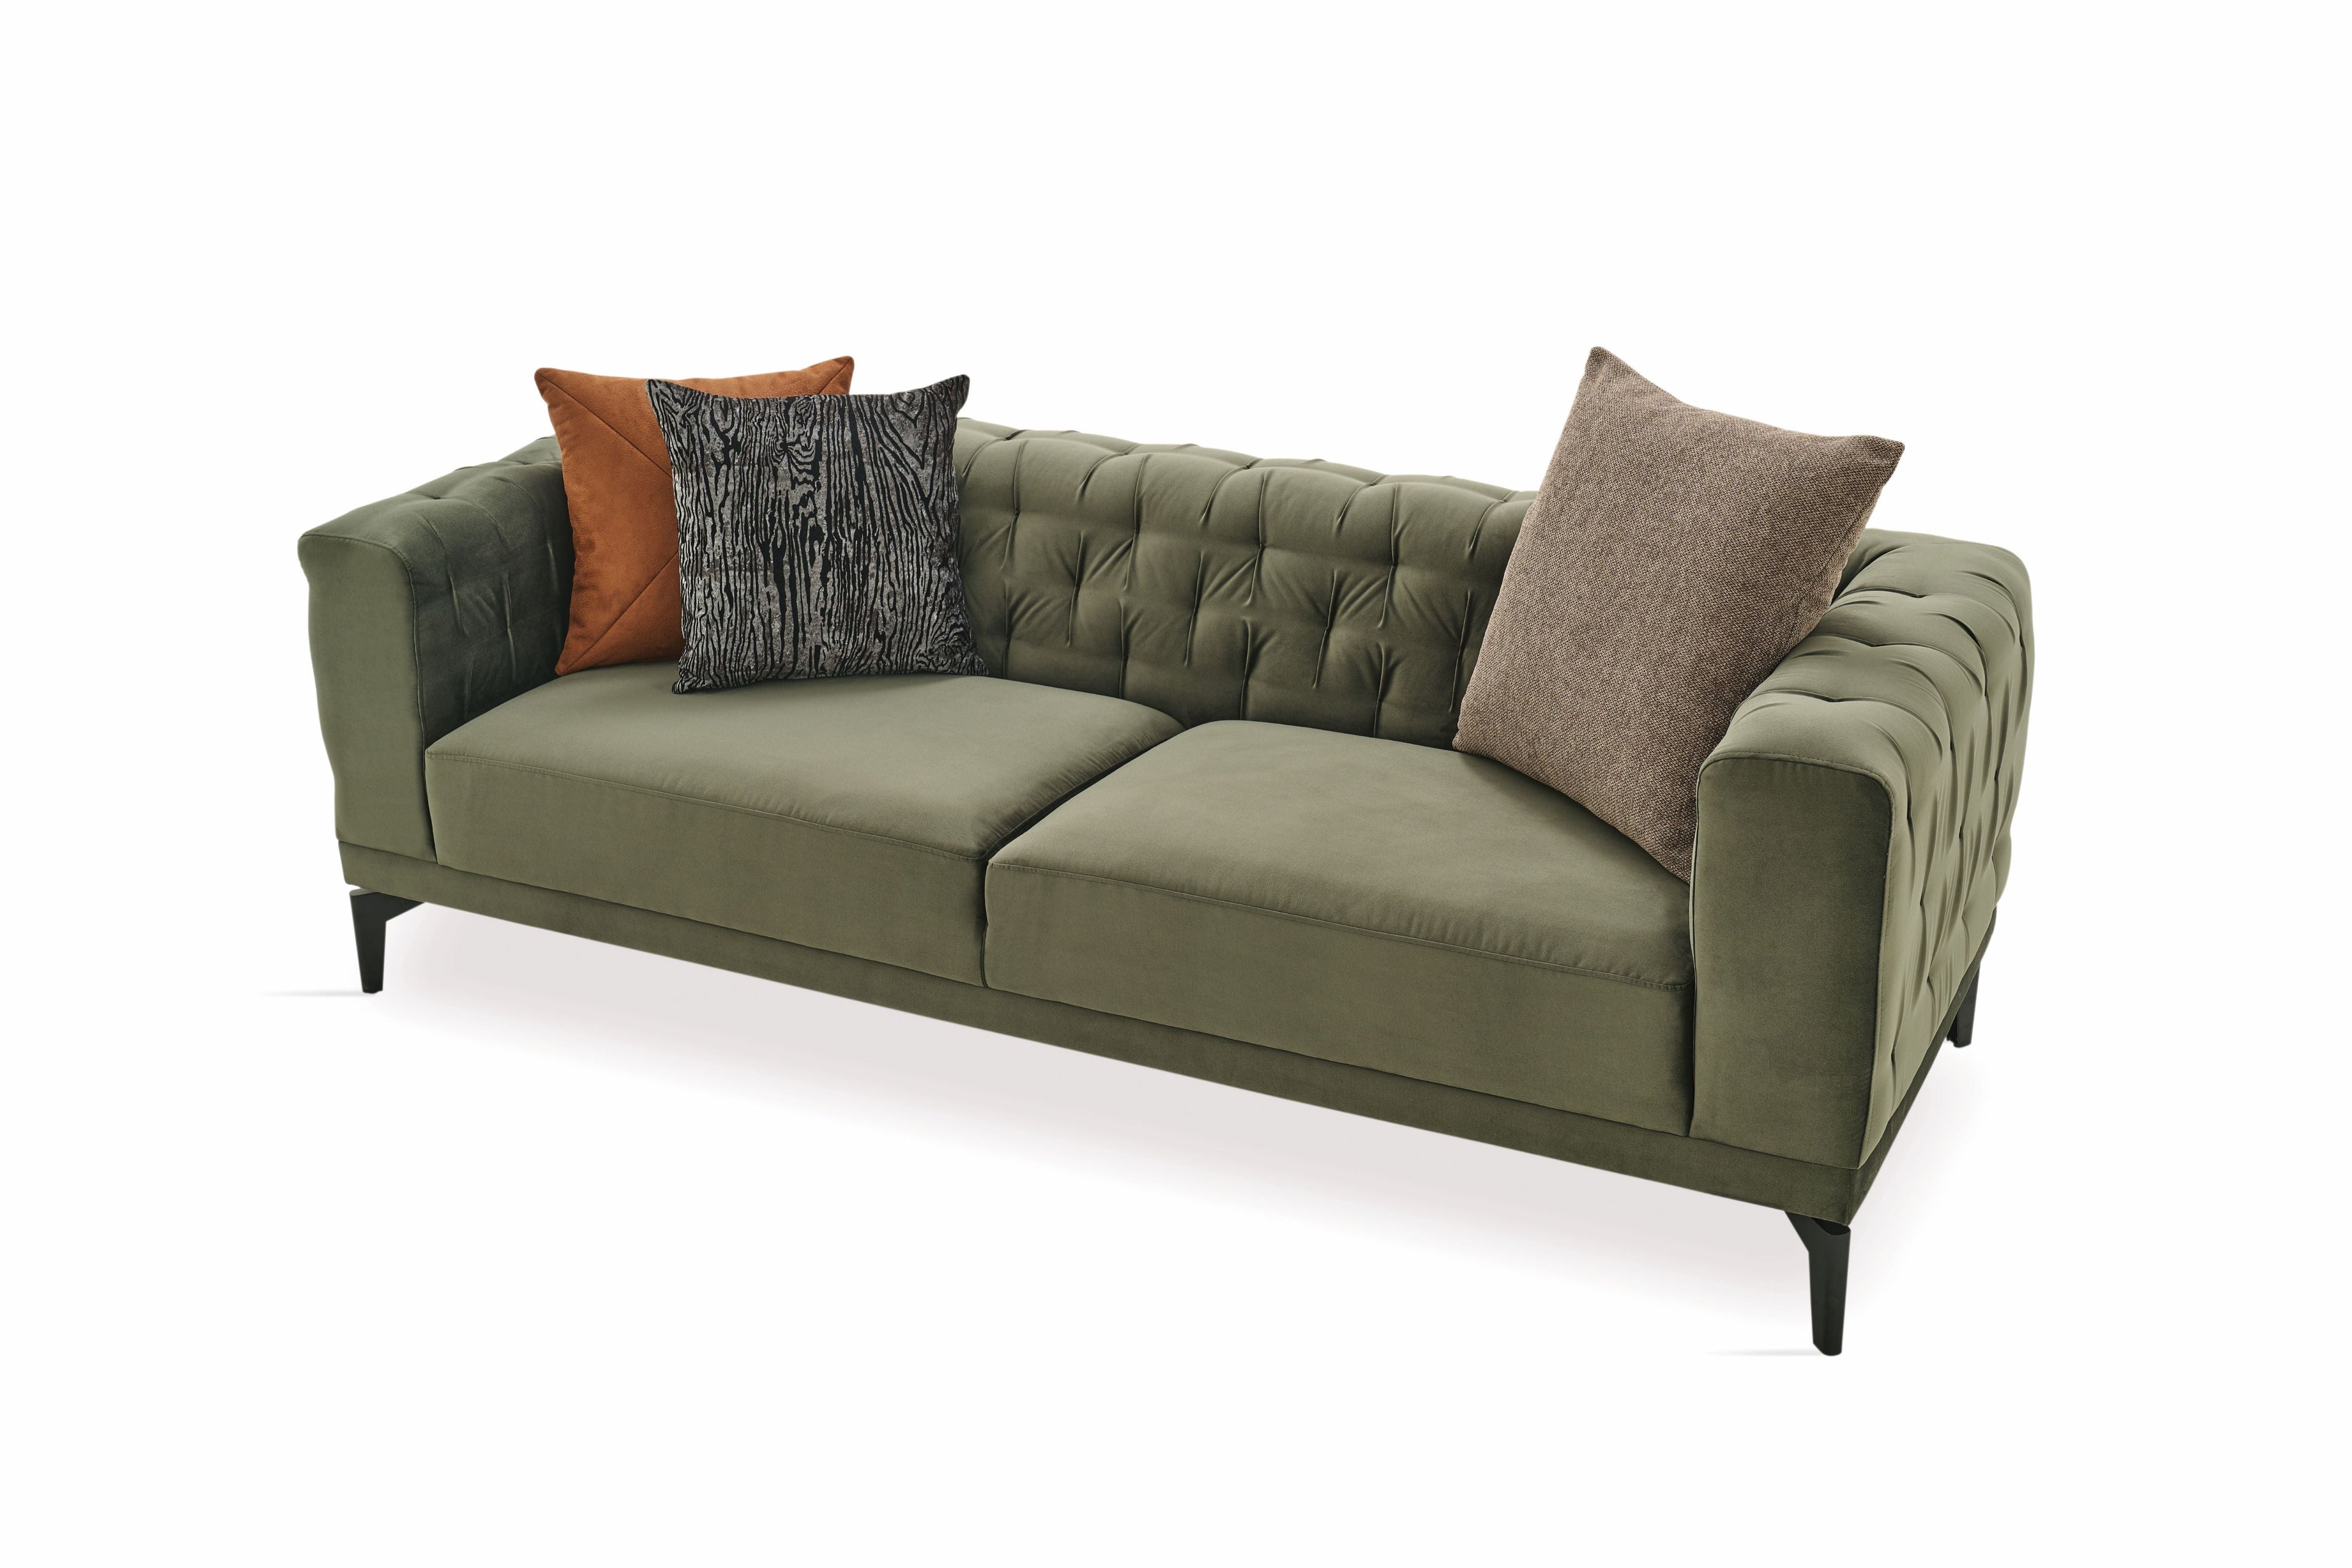 Dorian Green 3-Seater Sofa - DORIAN 03.301.0480.5526.0034.0000.20.40